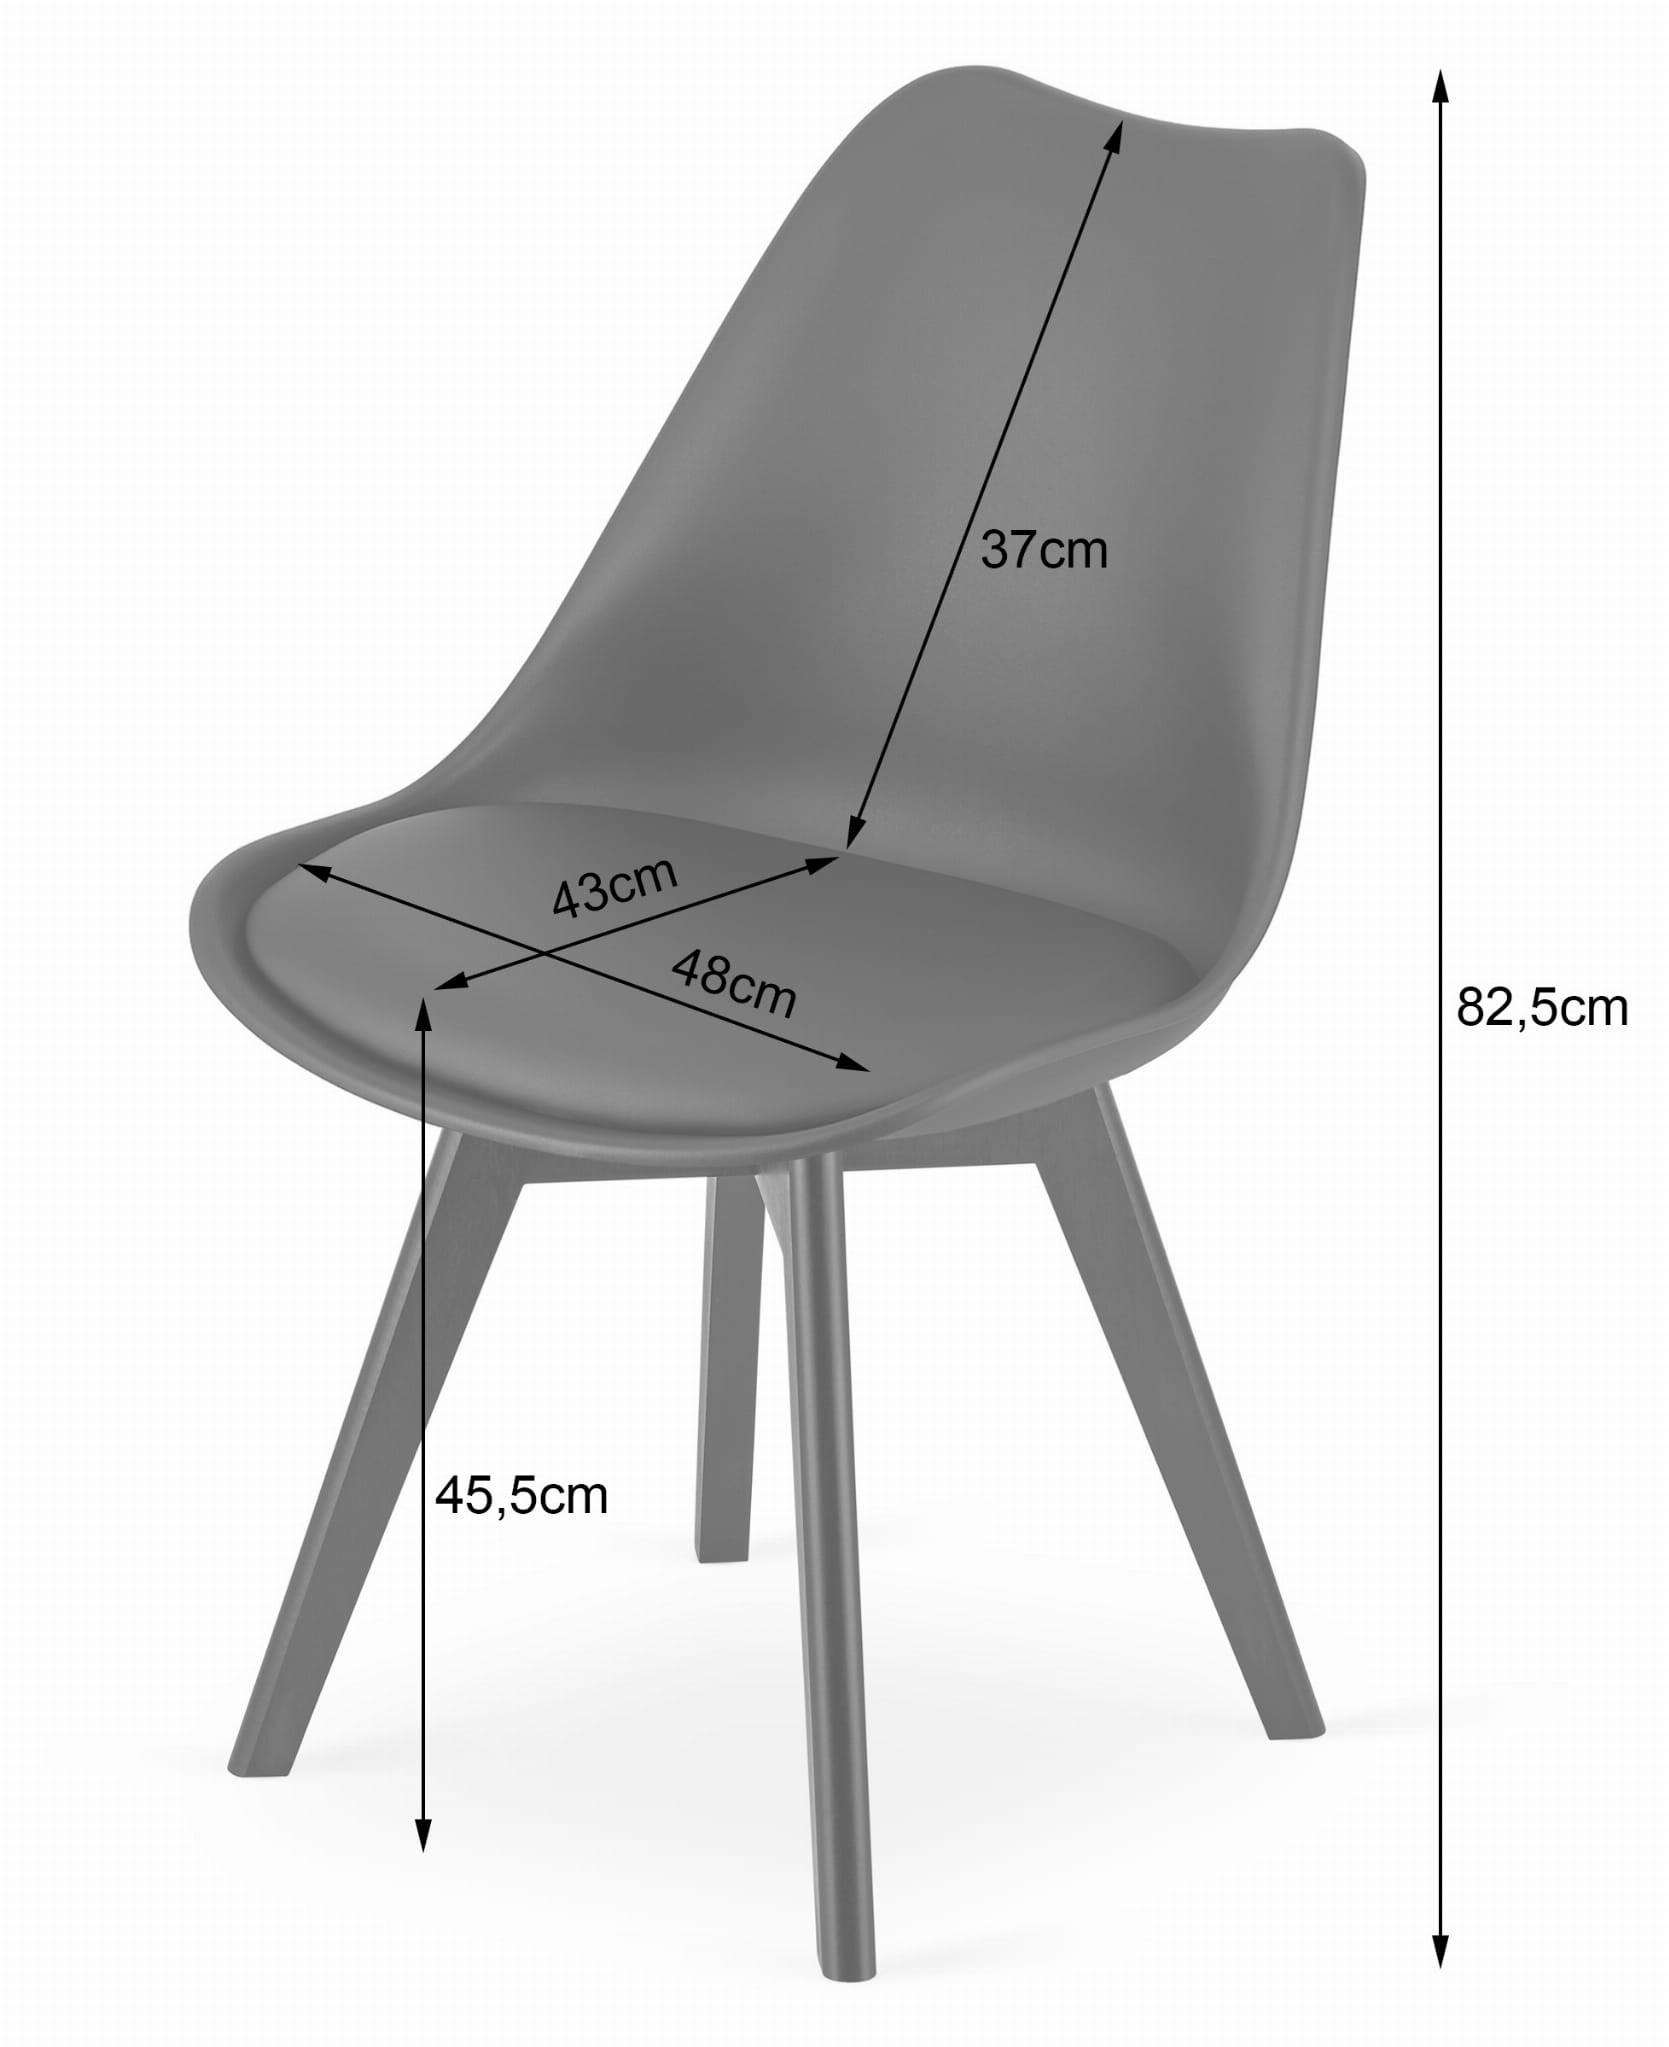 Jedálenská stolička MARK - biela (čierne nohy)